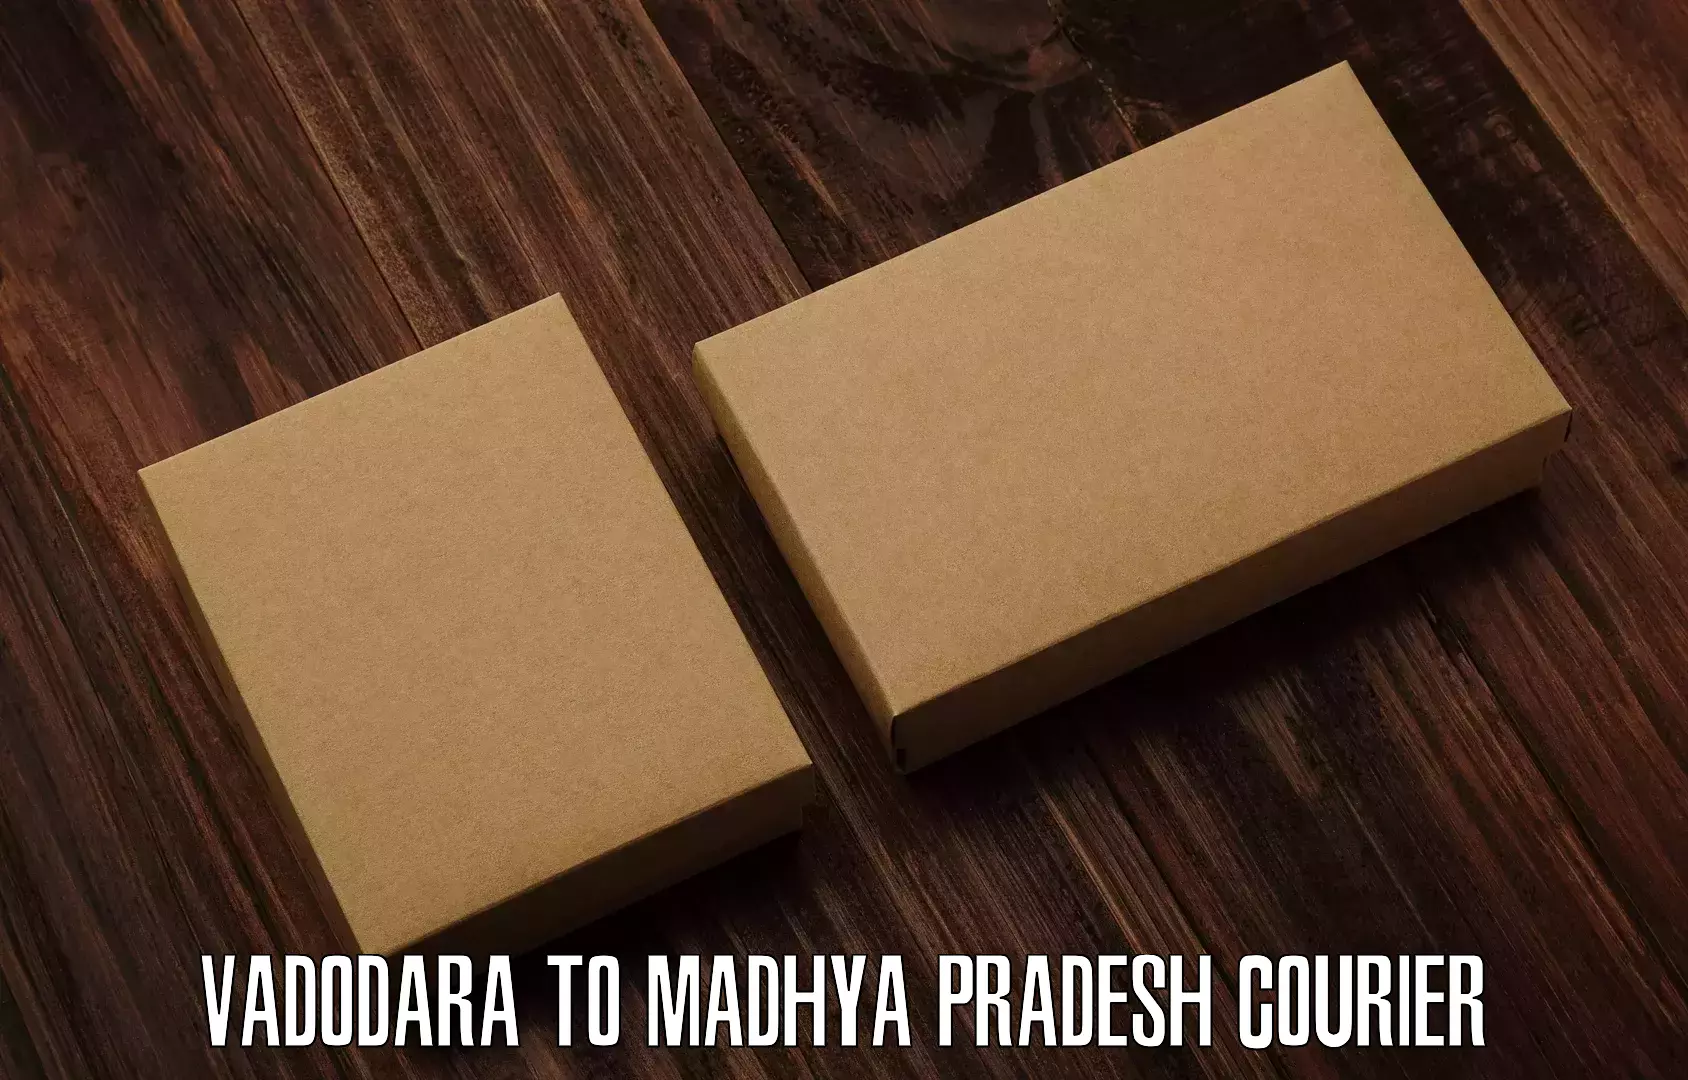 Reliable delivery network Vadodara to Madhya Pradesh